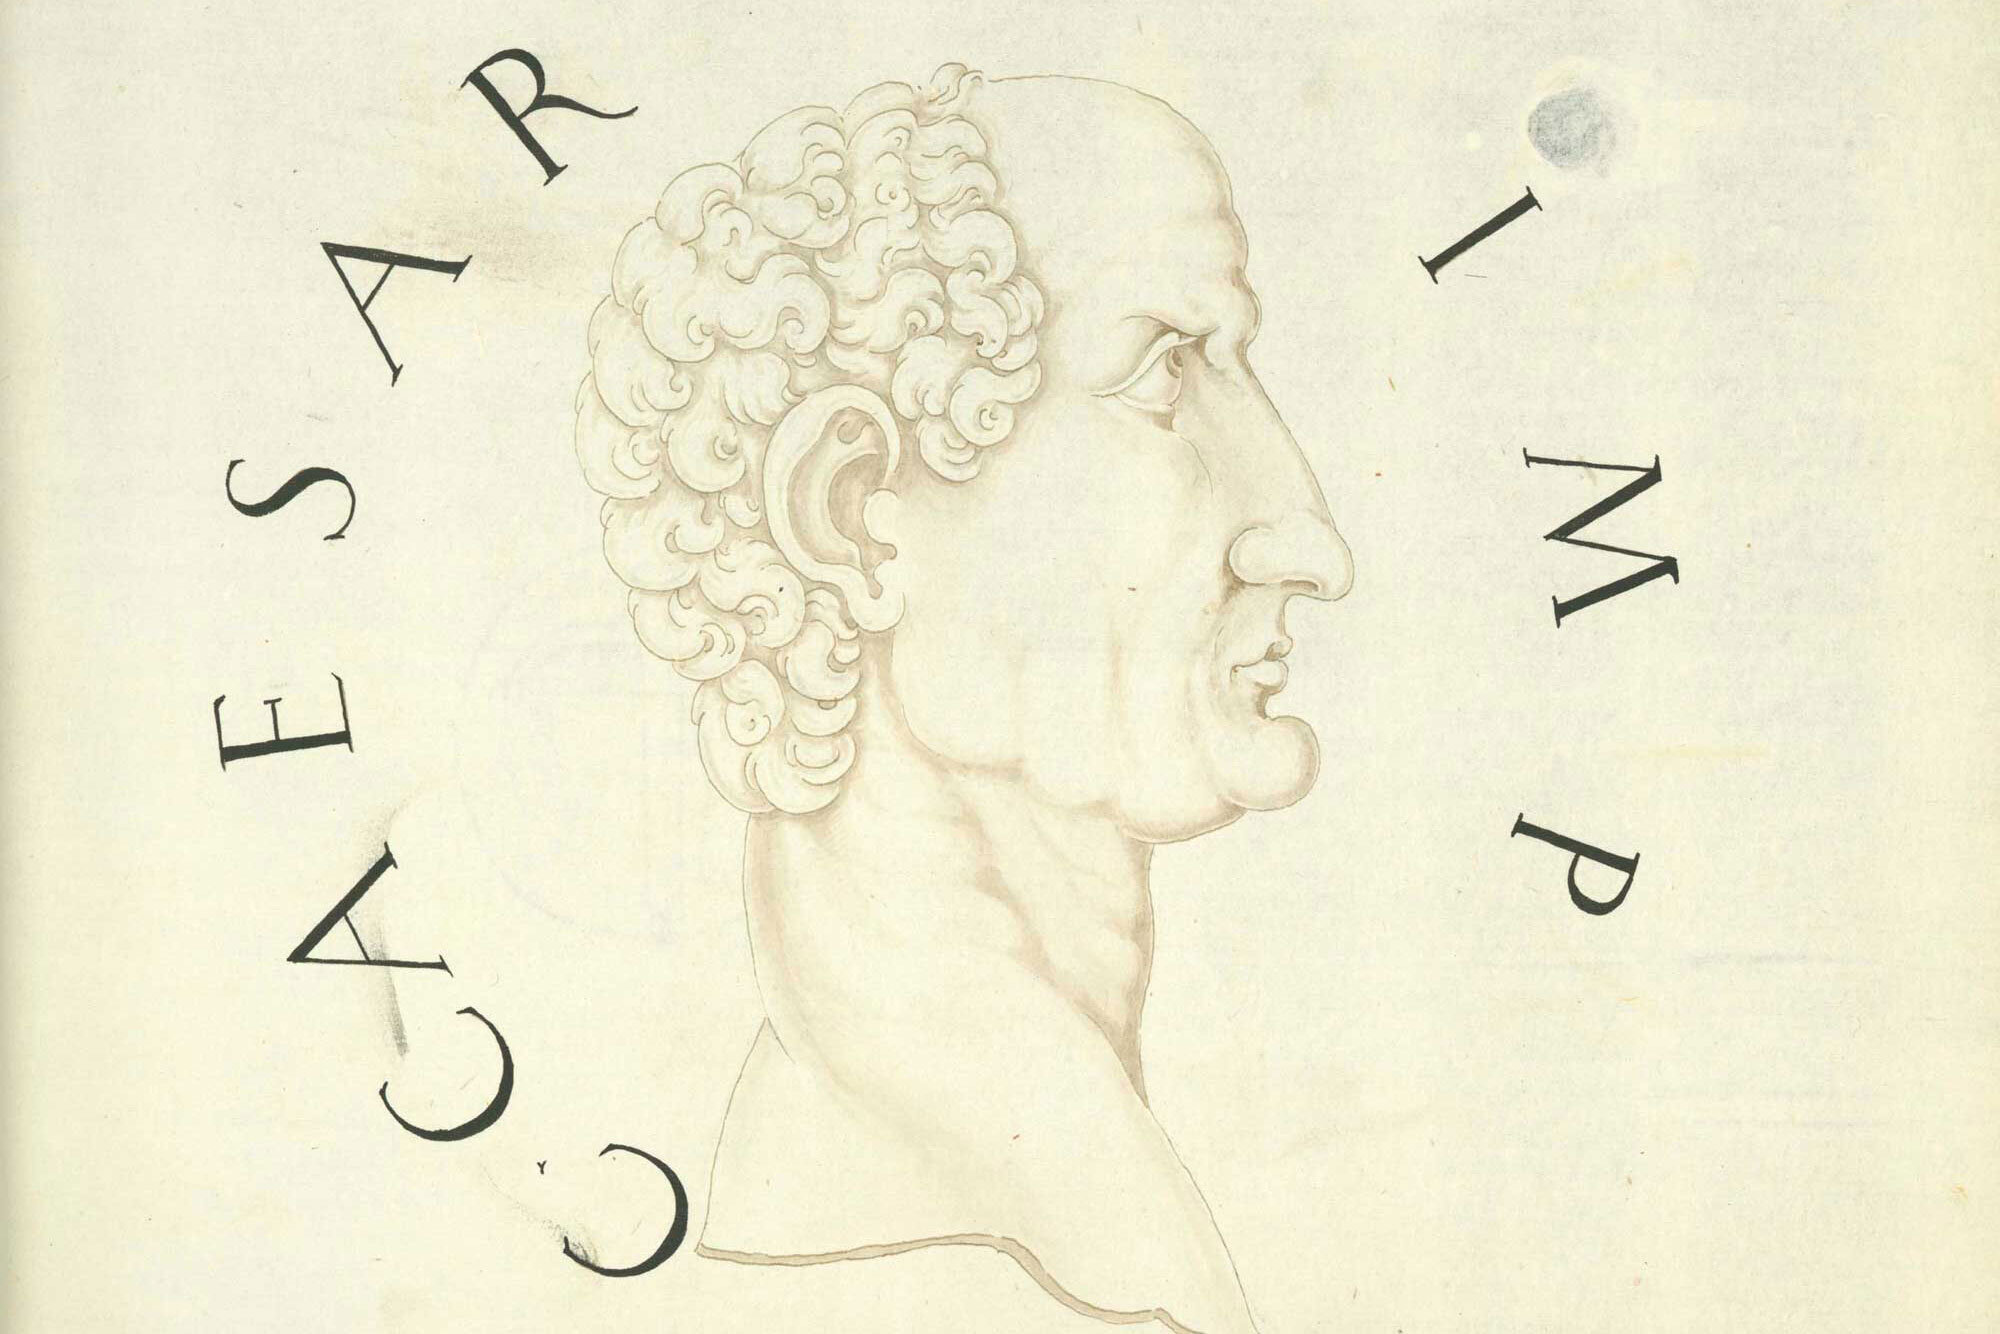 Jacopo Strada's Magnum ac Novum Opus